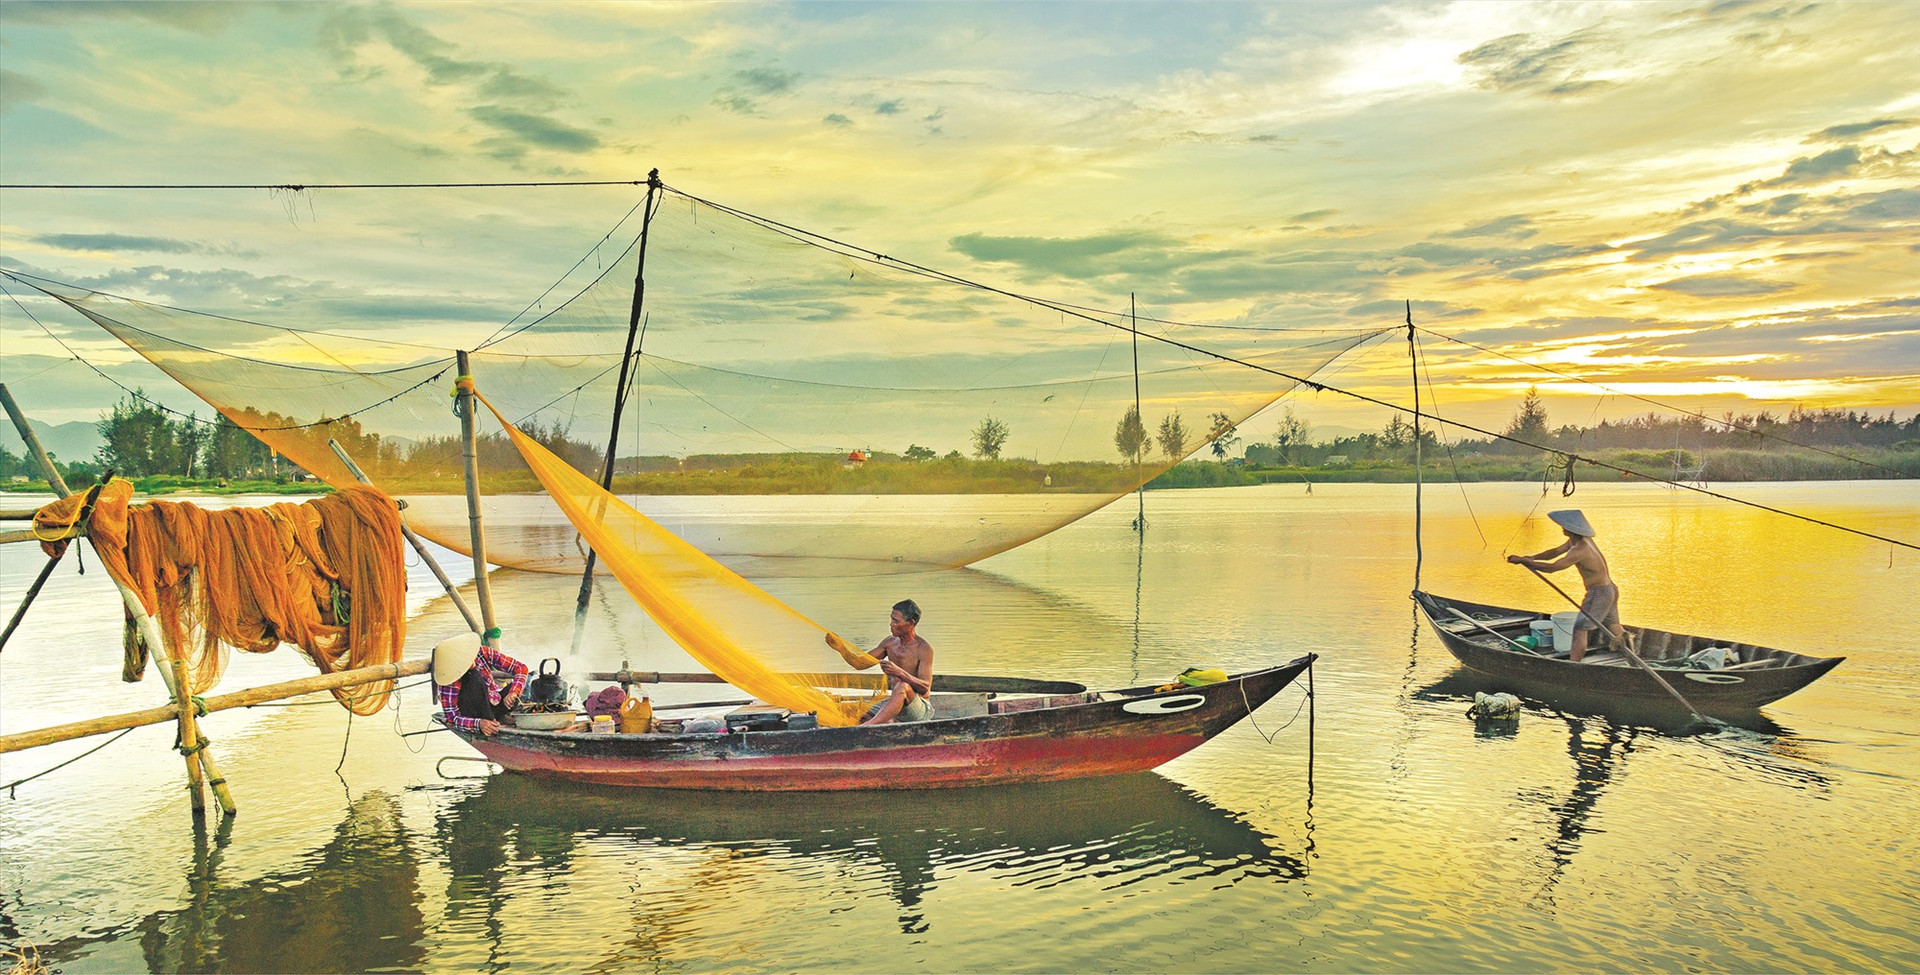 Vùng sông nước ven đô Hội An. ảnh: L.T.K